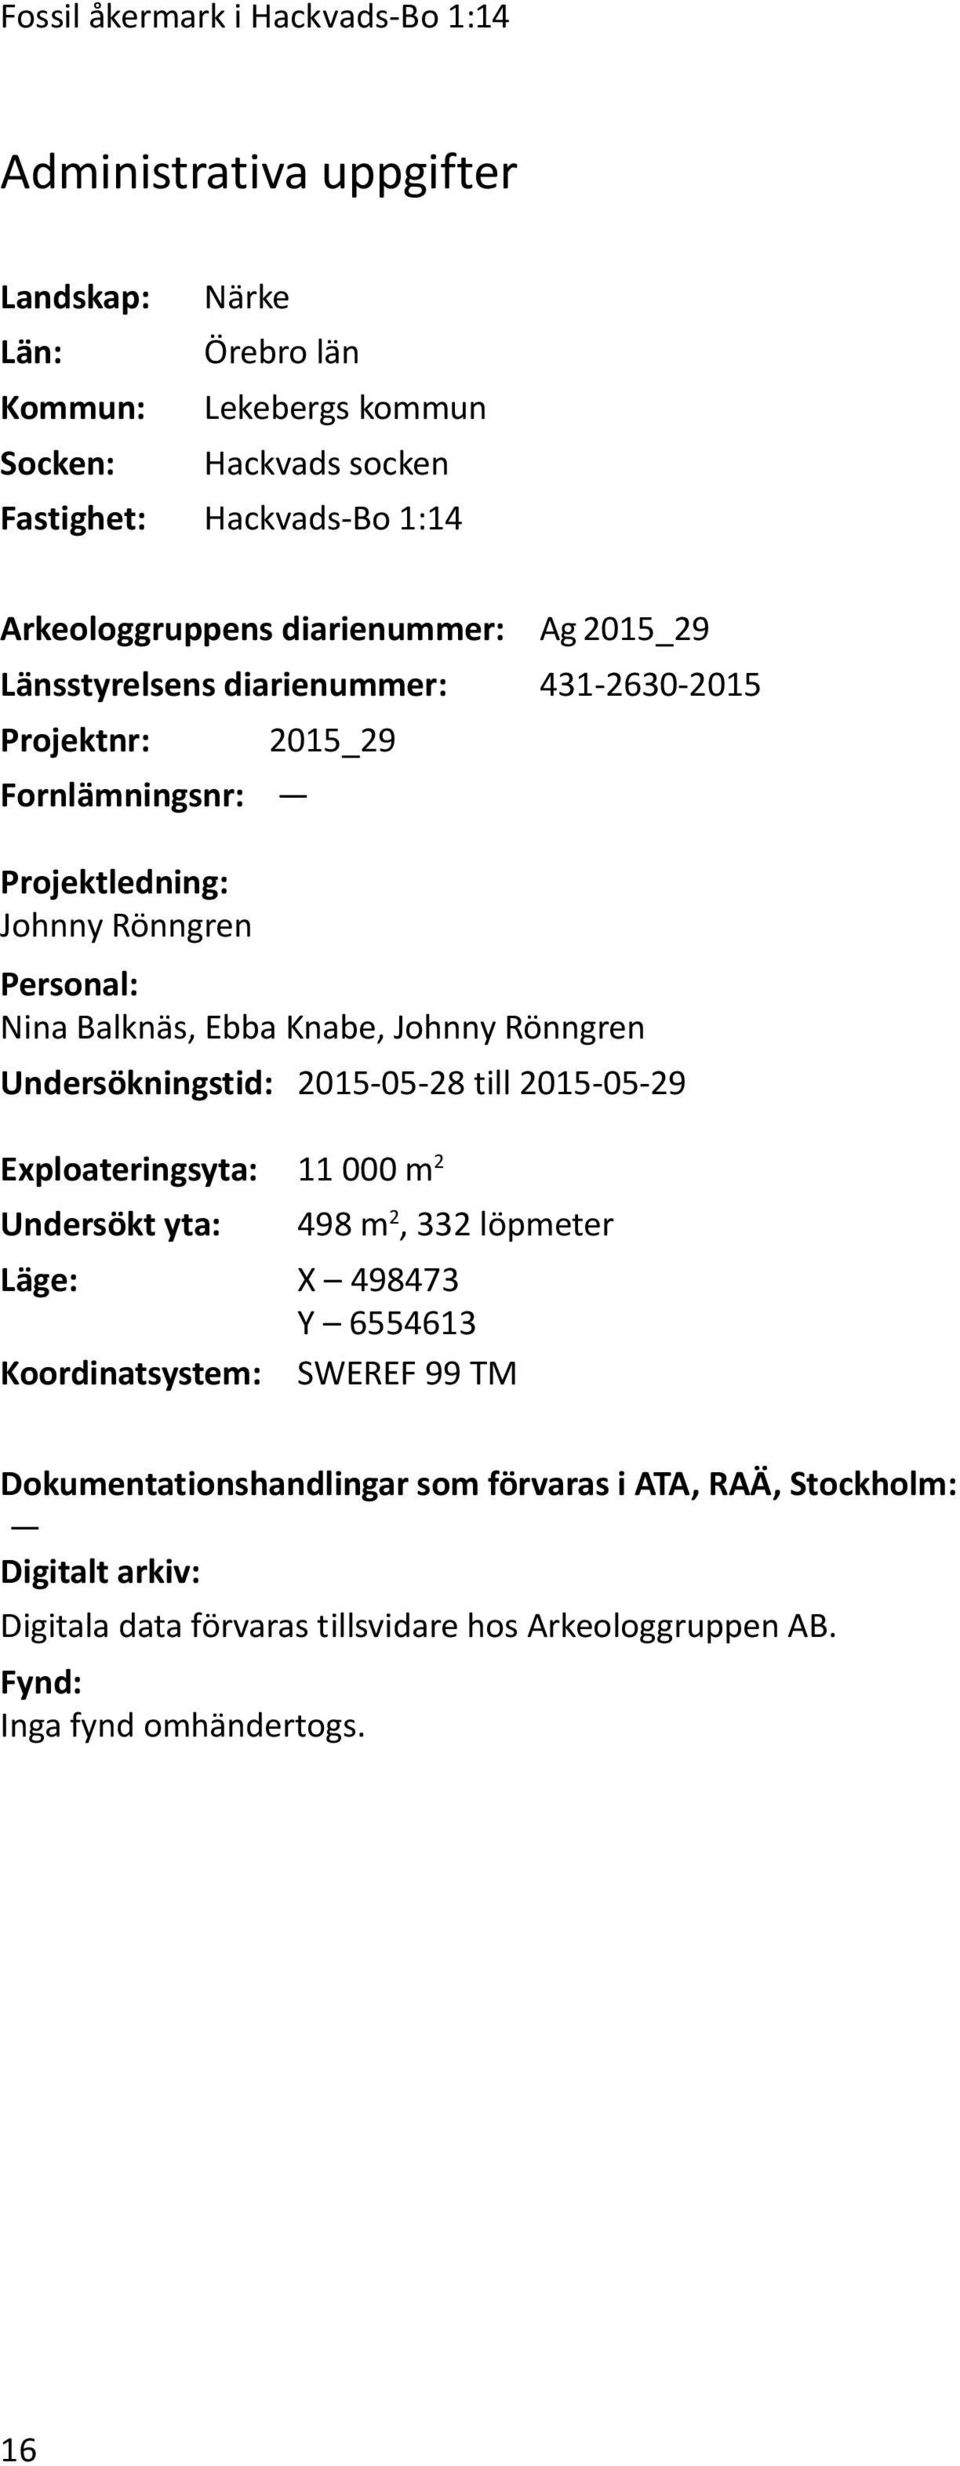 Ebba Knabe, Johnny Rönngren Undersökningstid: 2015-05-28 till 2015-05-29 Exploateringsyta: 11 000 m 2 Undersökt yta: 498 m 2, 332 löpmeter Läge: X 498473 Y 6554613